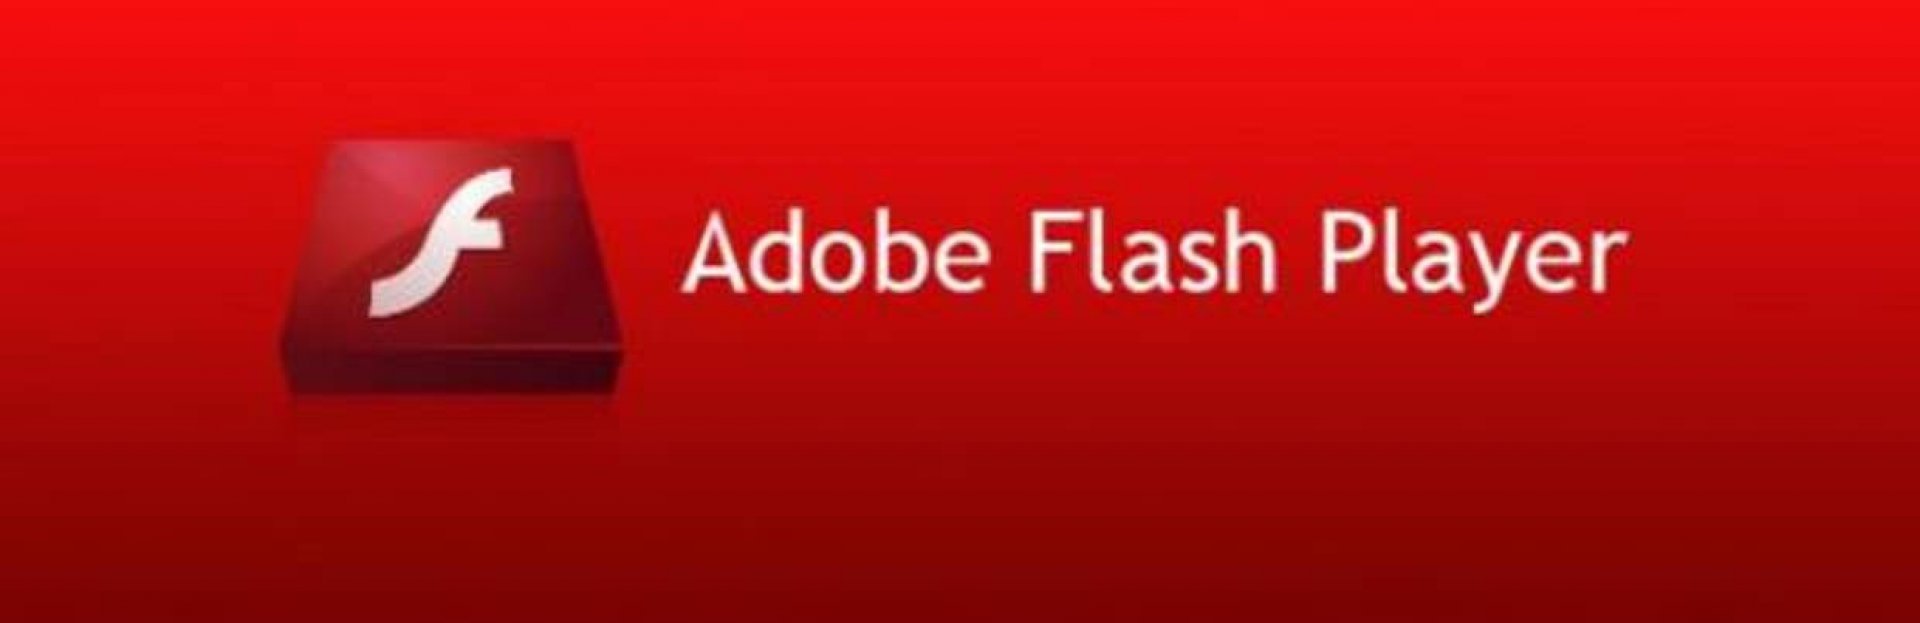 Qué implica el fin de Adobe Flash